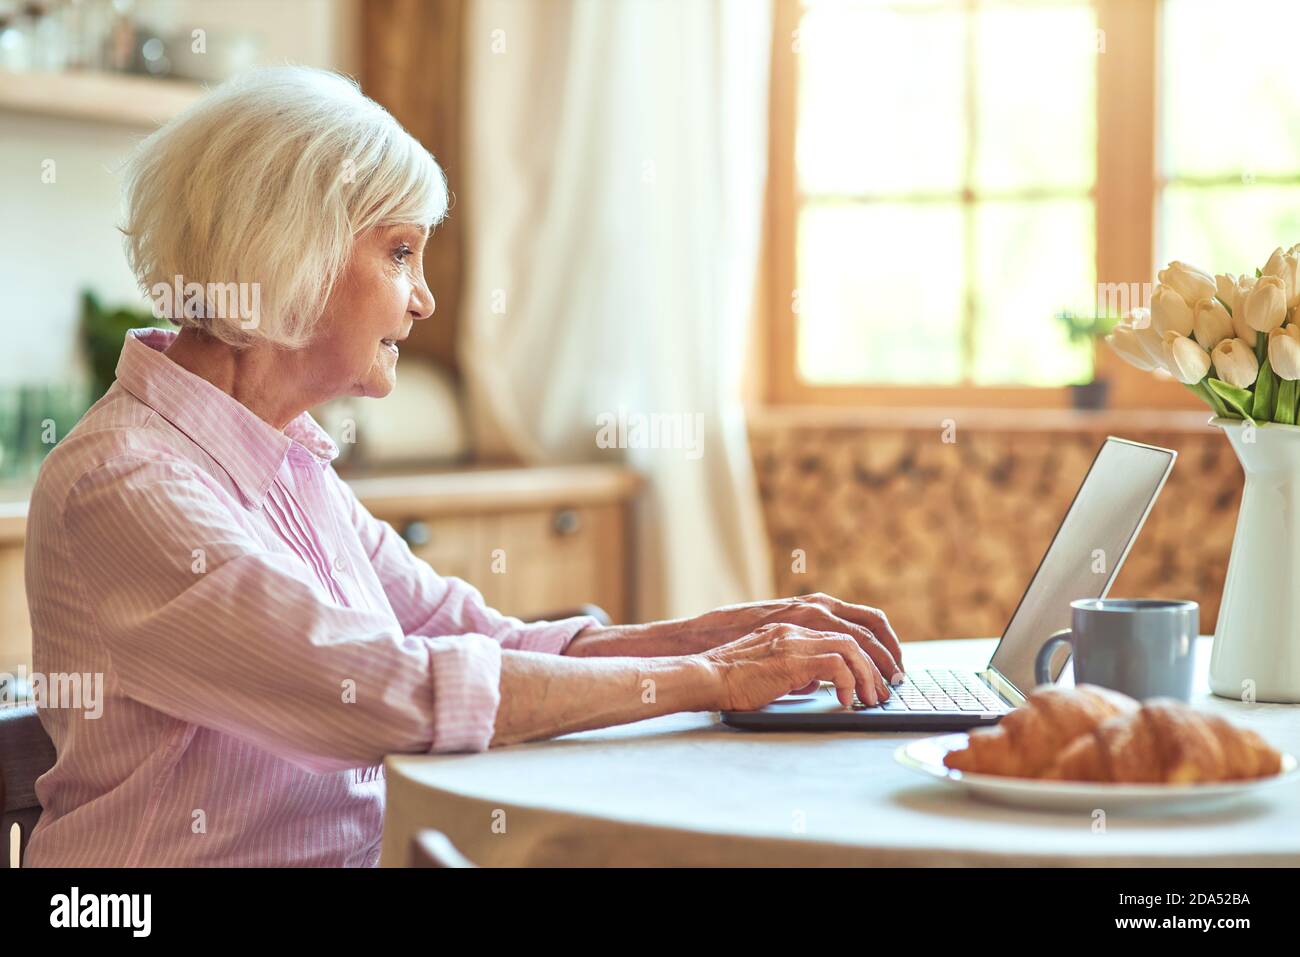 Vue latérale d'une femme âgée travaillant sur un ordinateur portable tout en buvant du thé le matin à la maison. Concept de style de vie domestique. Copier l'espace Banque D'Images